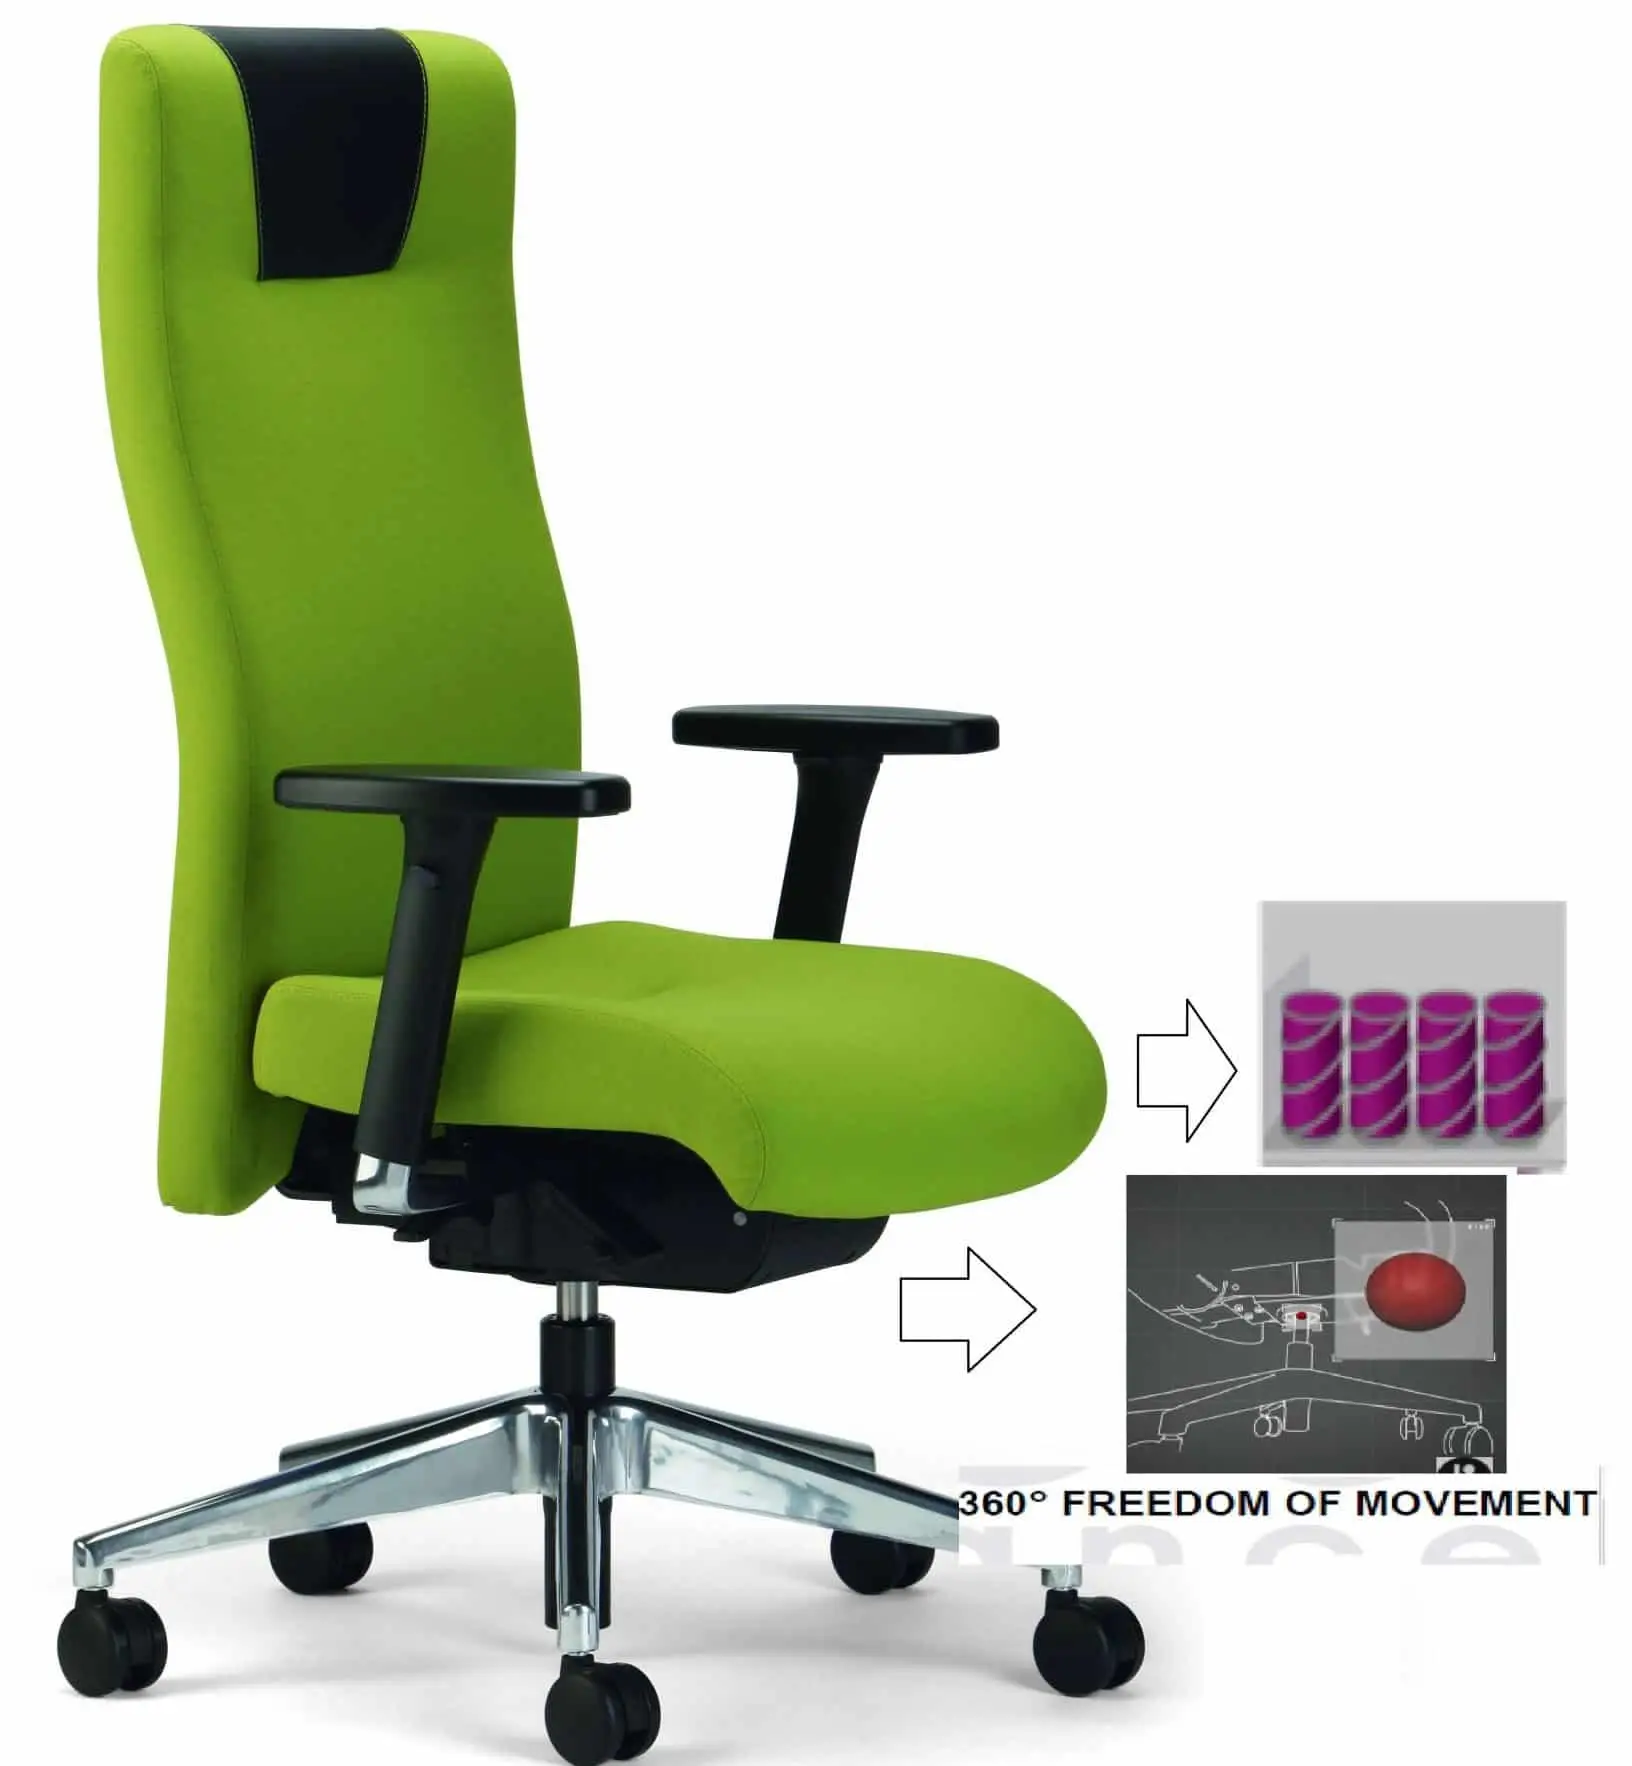 Rovo XP med fjeder i sædet og Ergobalance, en god kontorstol med dejlig komfort og ergonomi